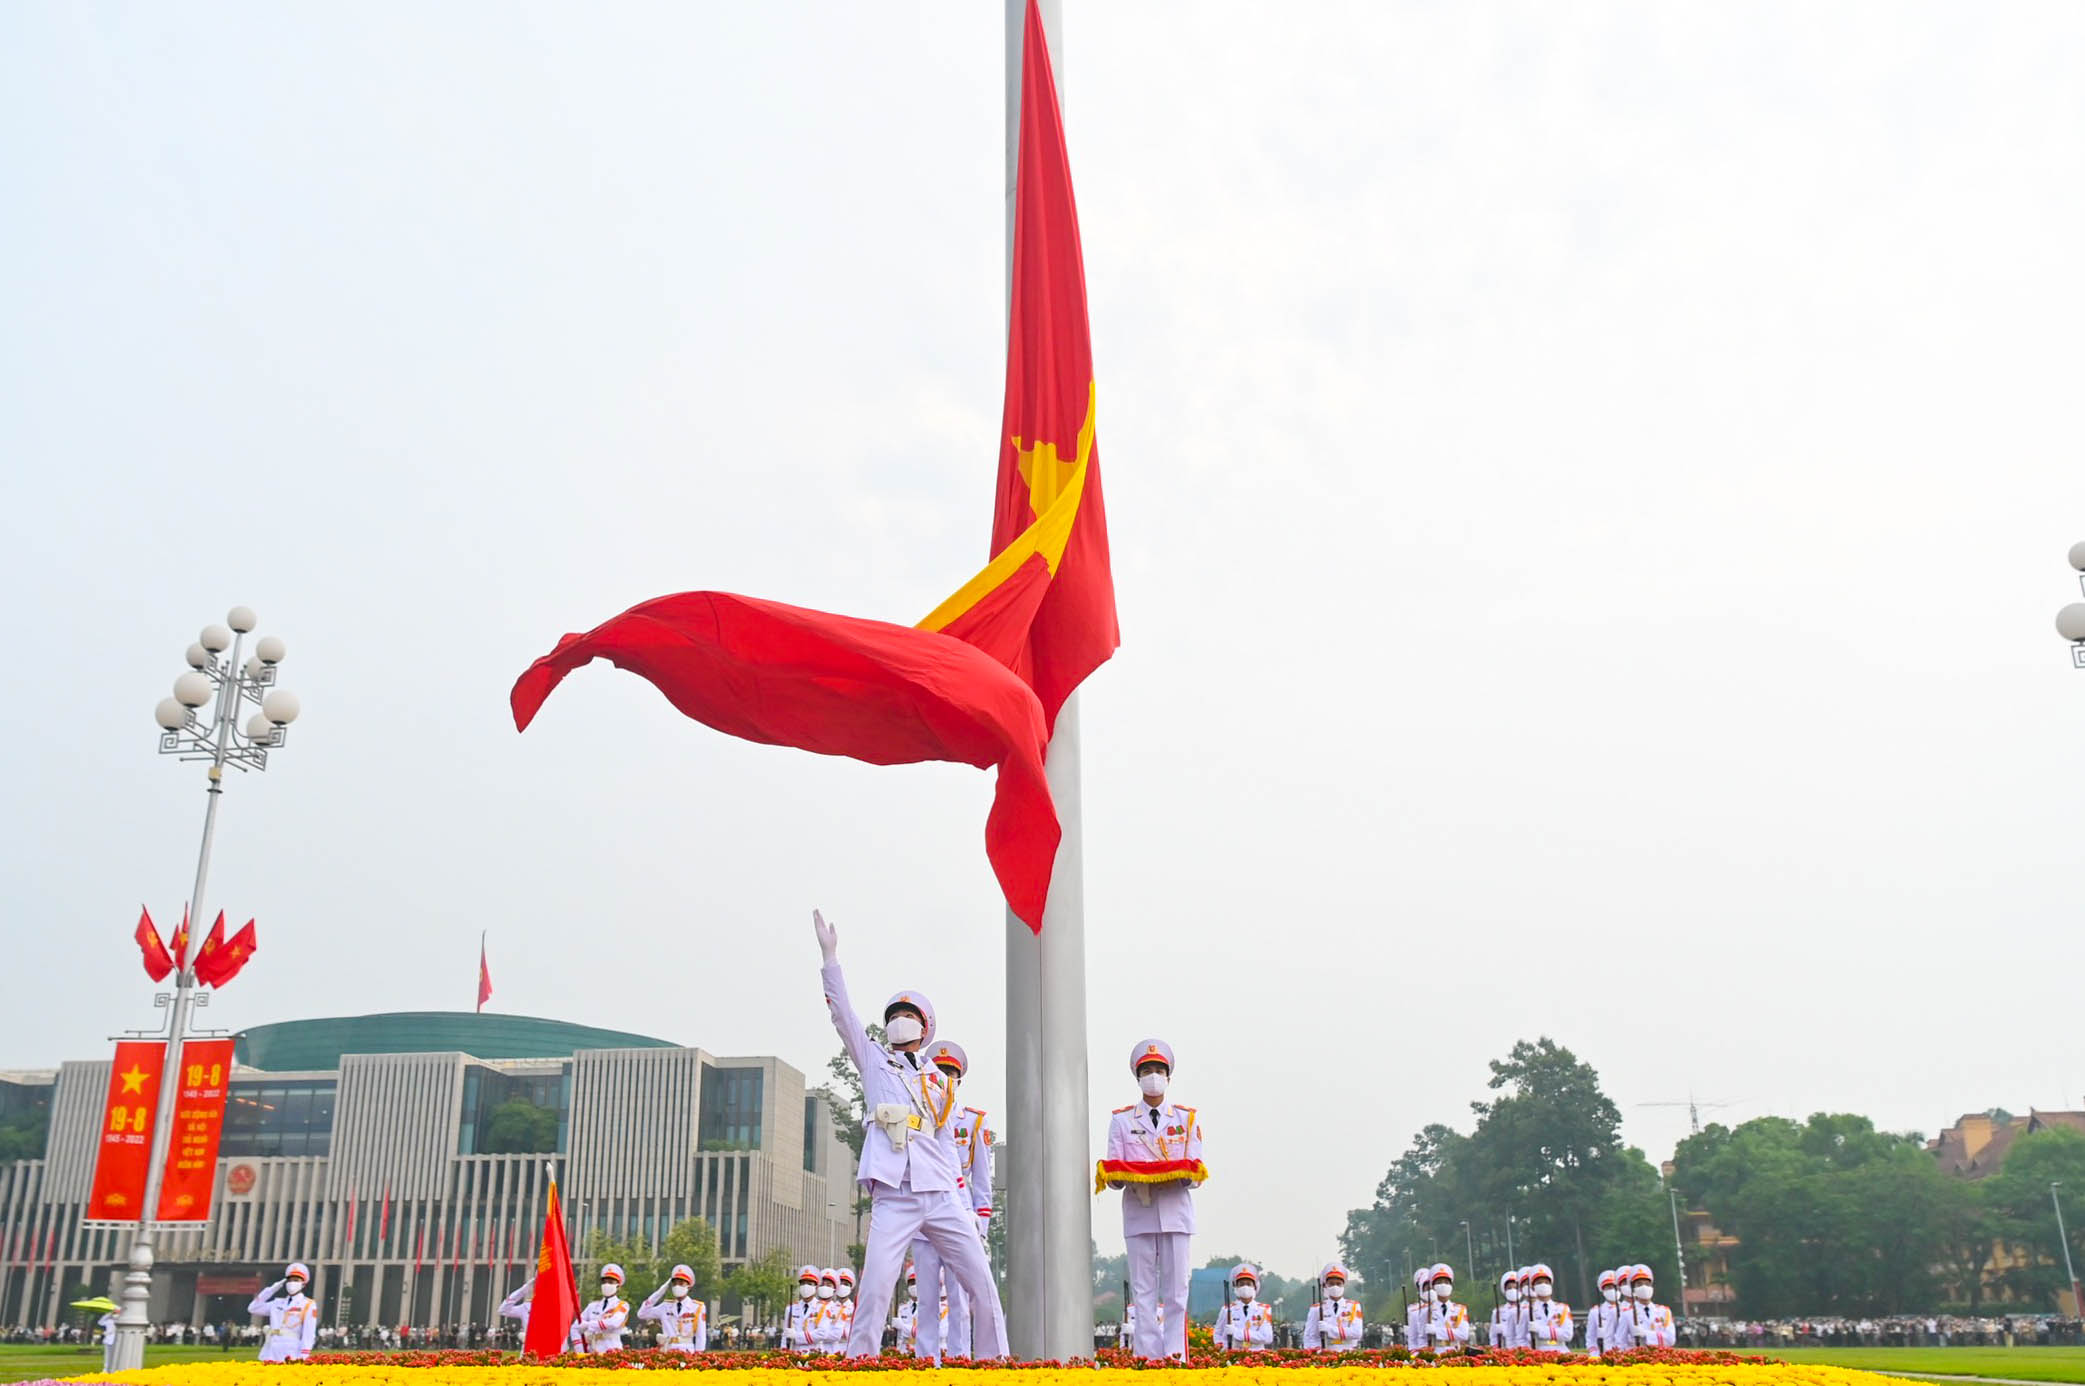 Chúc mừng Quốc khánh Trung Quốc là dịp để cùng đồng hành trong niềm vui và nhận ra sự phát triển của quốc gia này trong suốt những năm qua. Hãy tham gia với chúng tôi trong việc chúc mừng ngày Quốc khánh Trung Quốc ở năm 2024 để hiểu thêm về quốc gia này và văn hóa ấn tượng của họ.